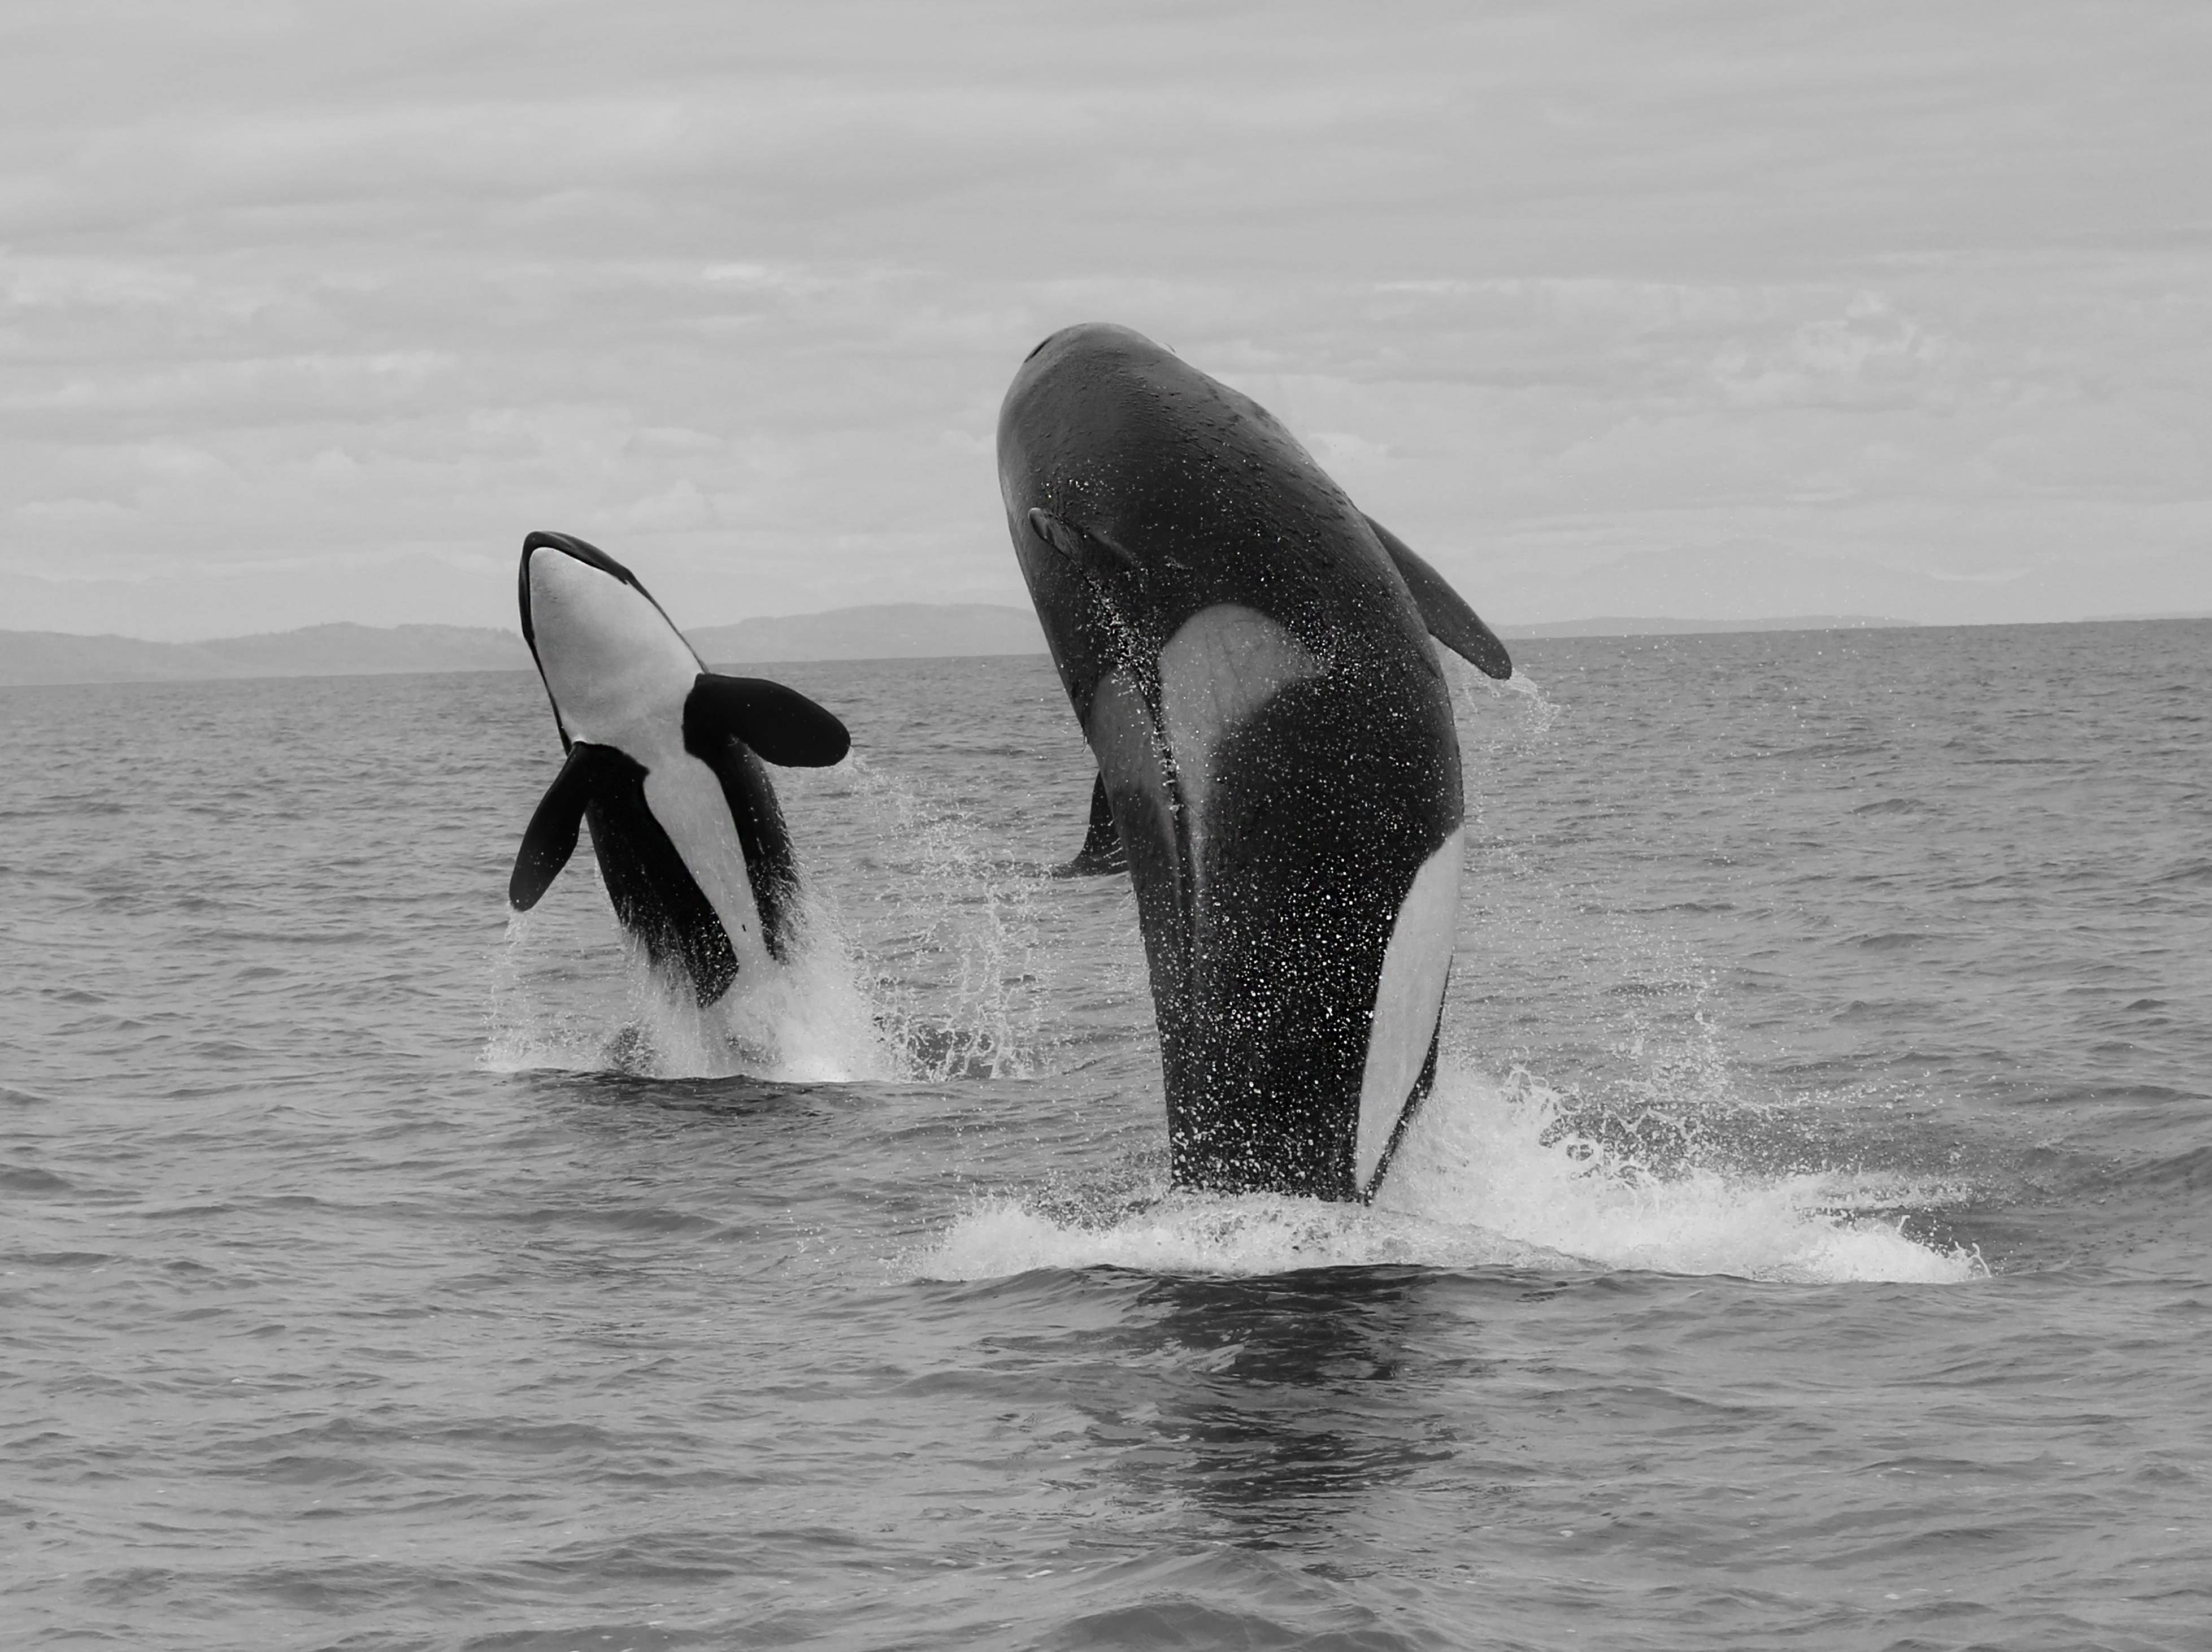 Black and White Photograph Shane Russeck - Photographie « Orca Double Breach » en noir et blanc, photographe de baleine tueur, 45 x 60 